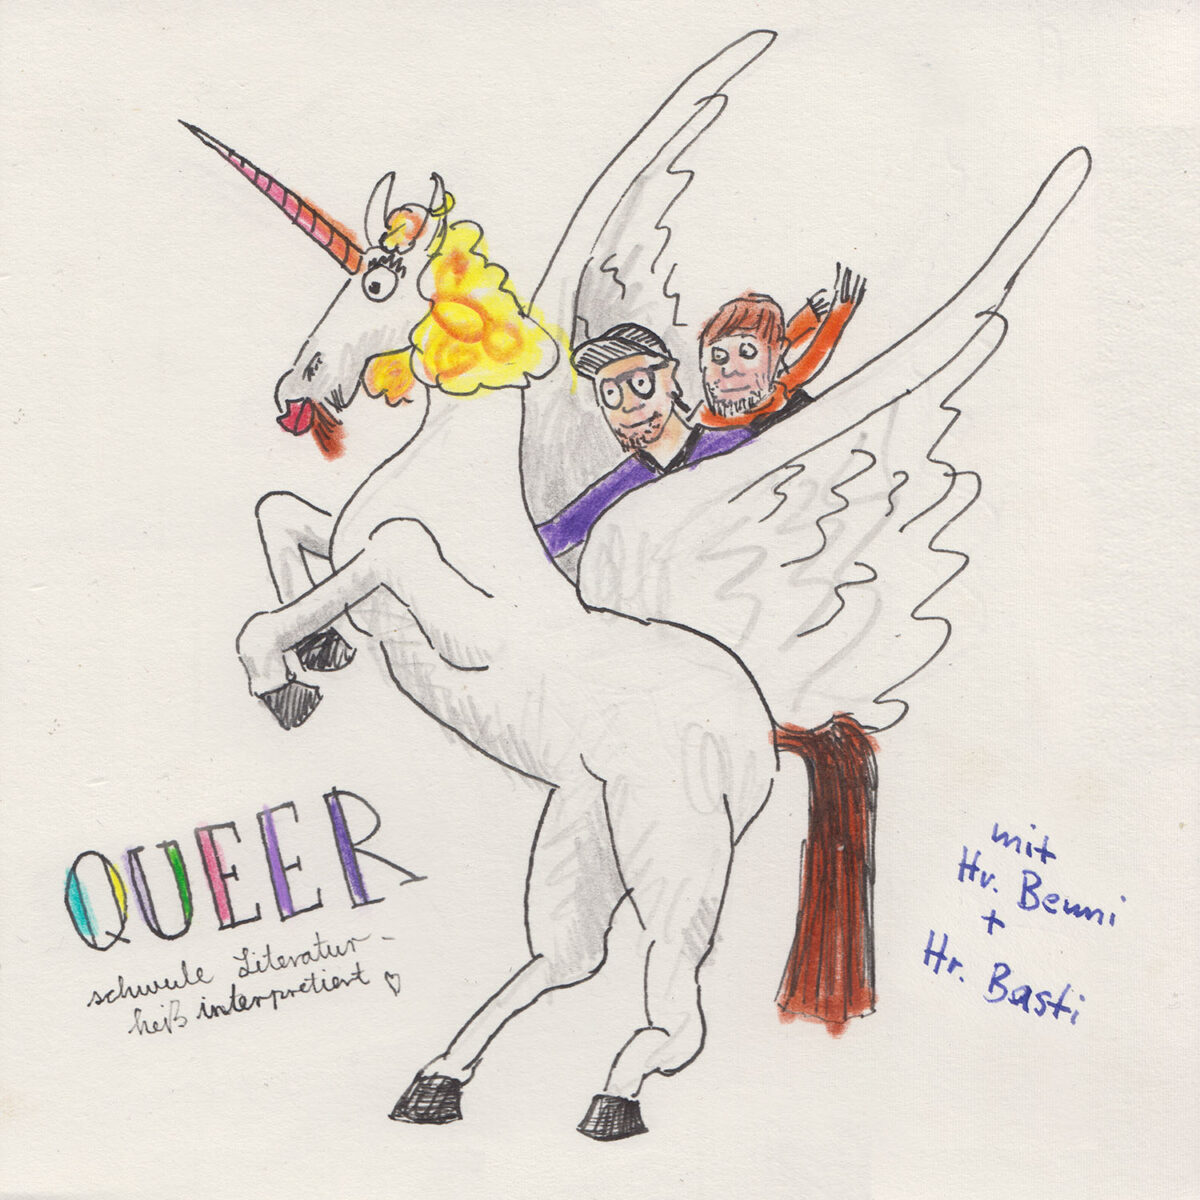 #0071 – Queer (mit: Herr Basti und Herr Benni)